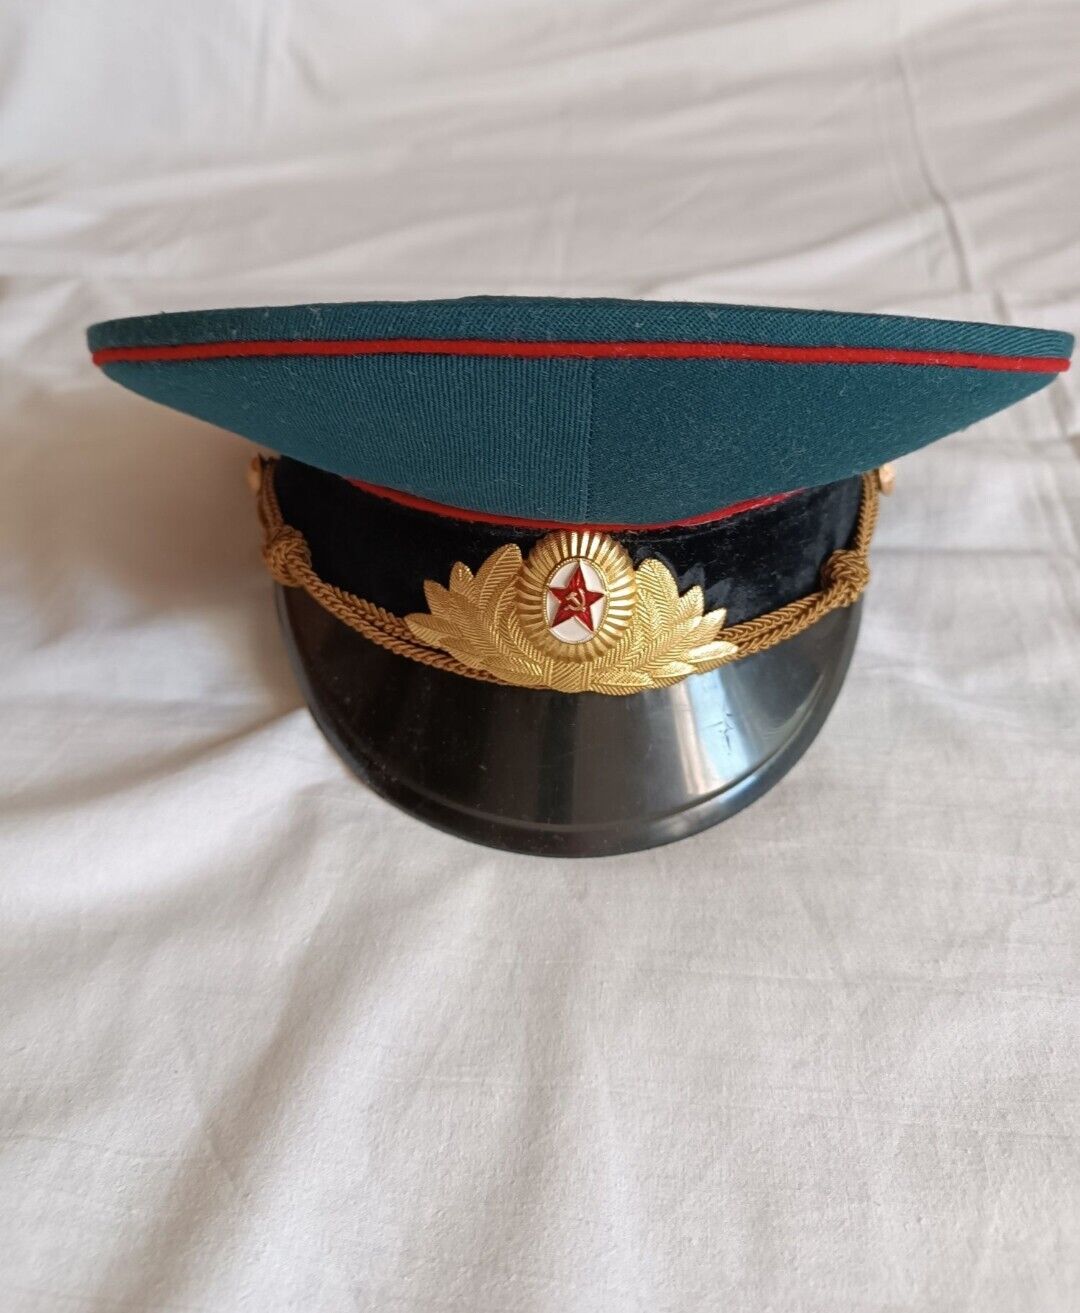 dress uniform officer\'s cap 1980